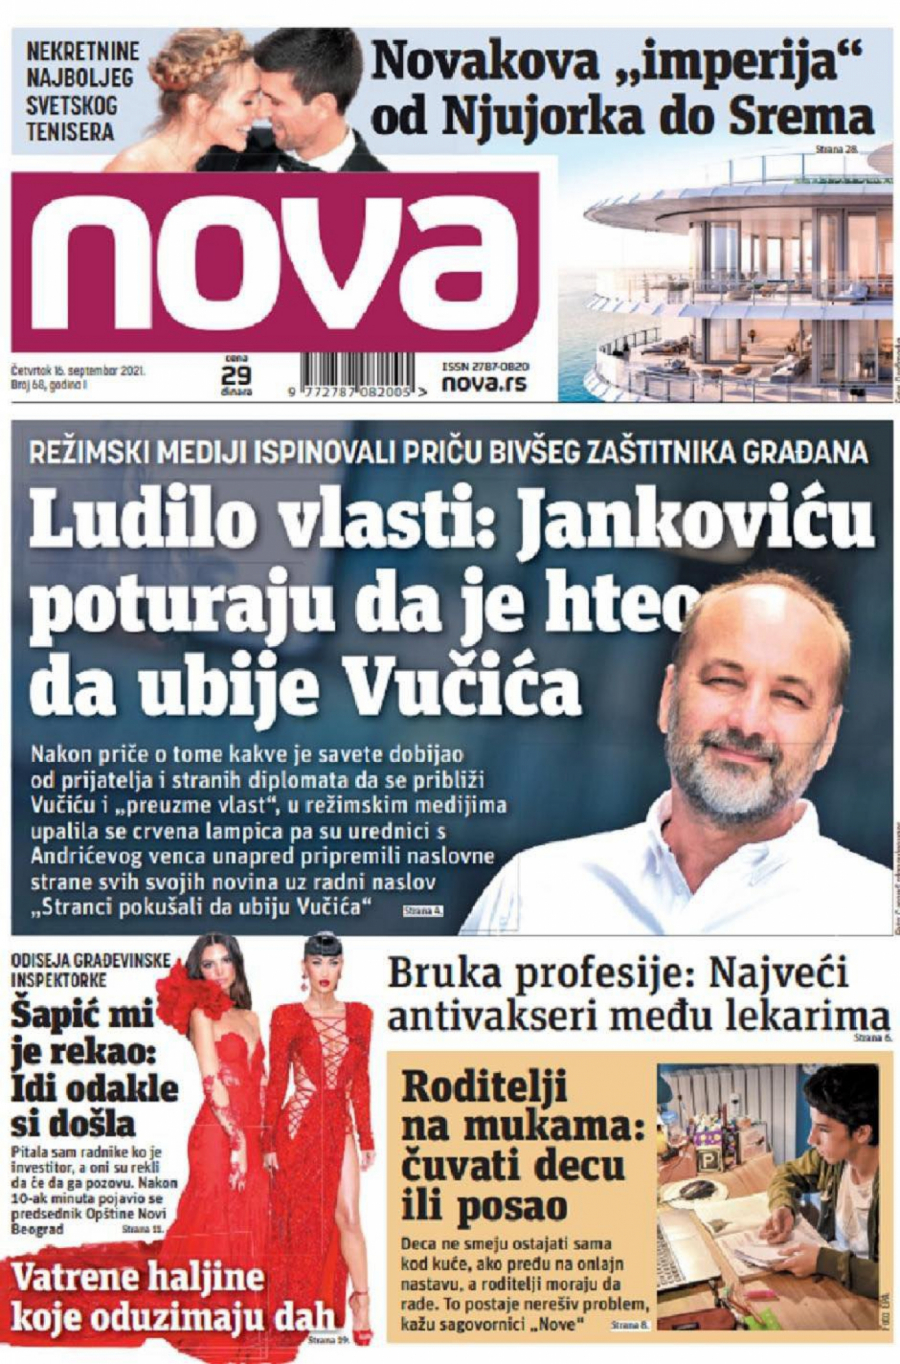 ĐILASU VIŠE NE VERUJU NI DA SE ZOVE DRAGAN Smeta mu što se Vučić javno zahvalio Saši Jankoviću, pa pokušava da izvrne istinu